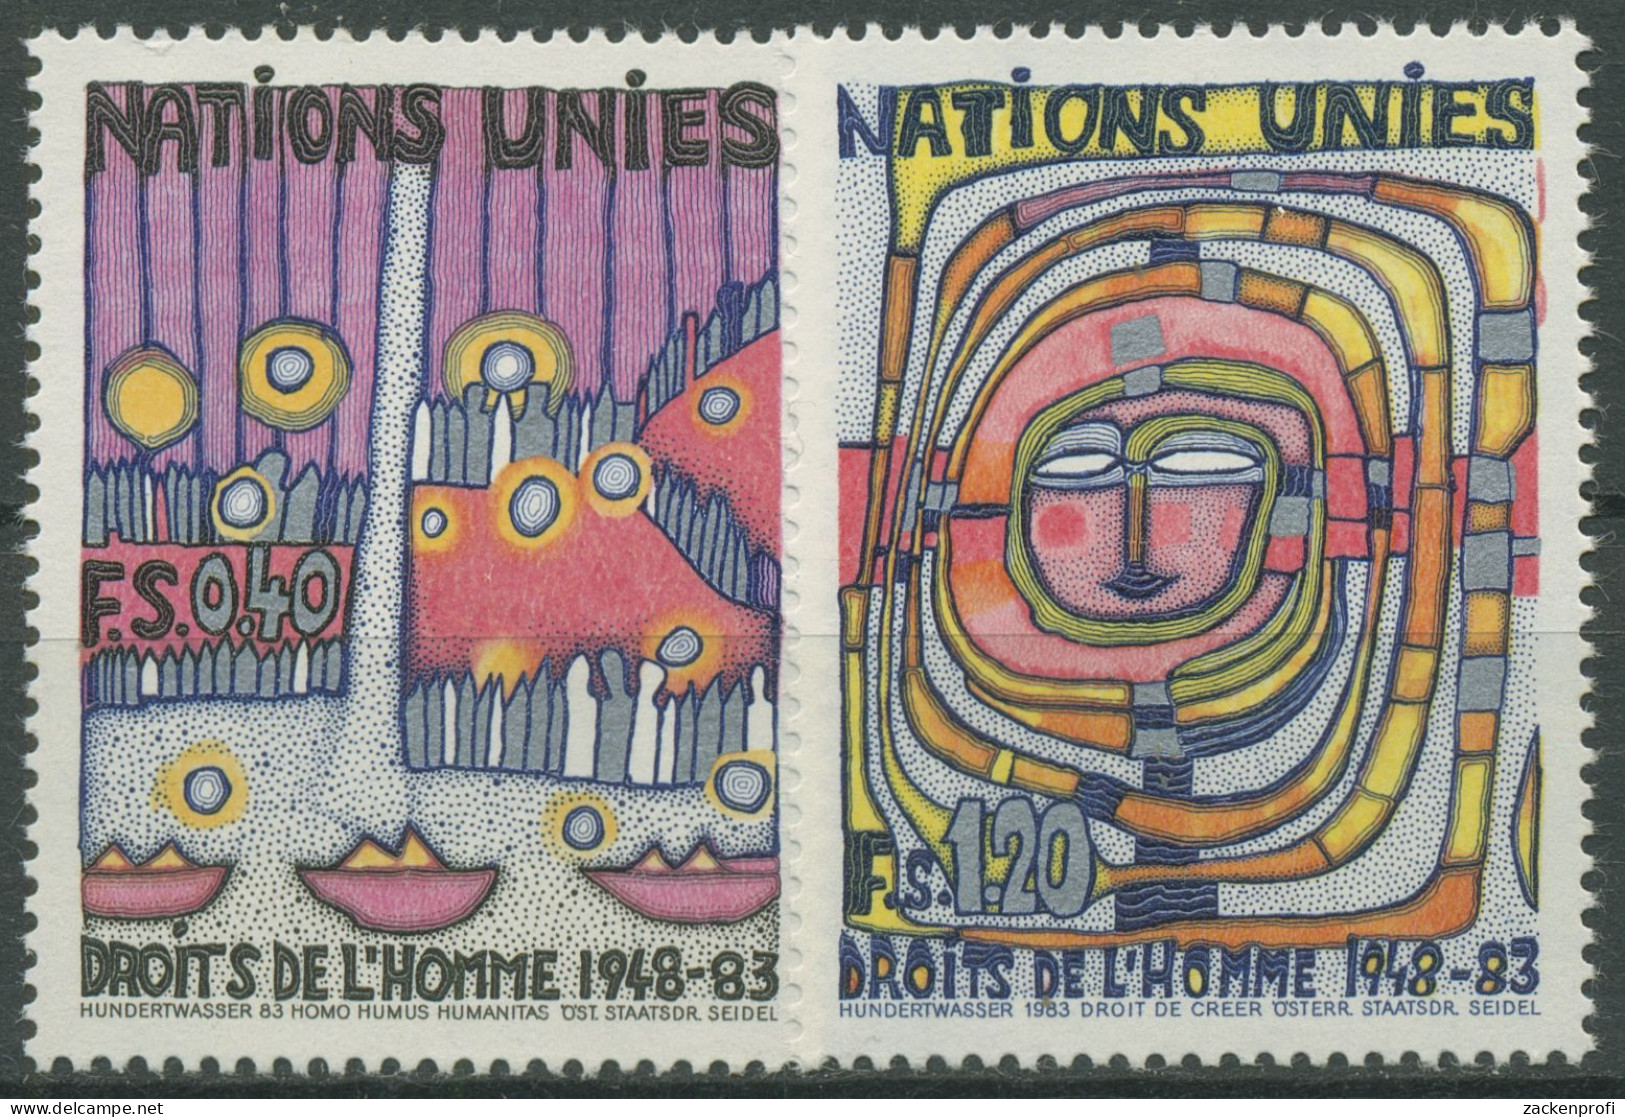 UNO Genf 1983 Erklärung Der Menschrechte Gemälde Hundertwasser 117/18 Postfrisch - Neufs